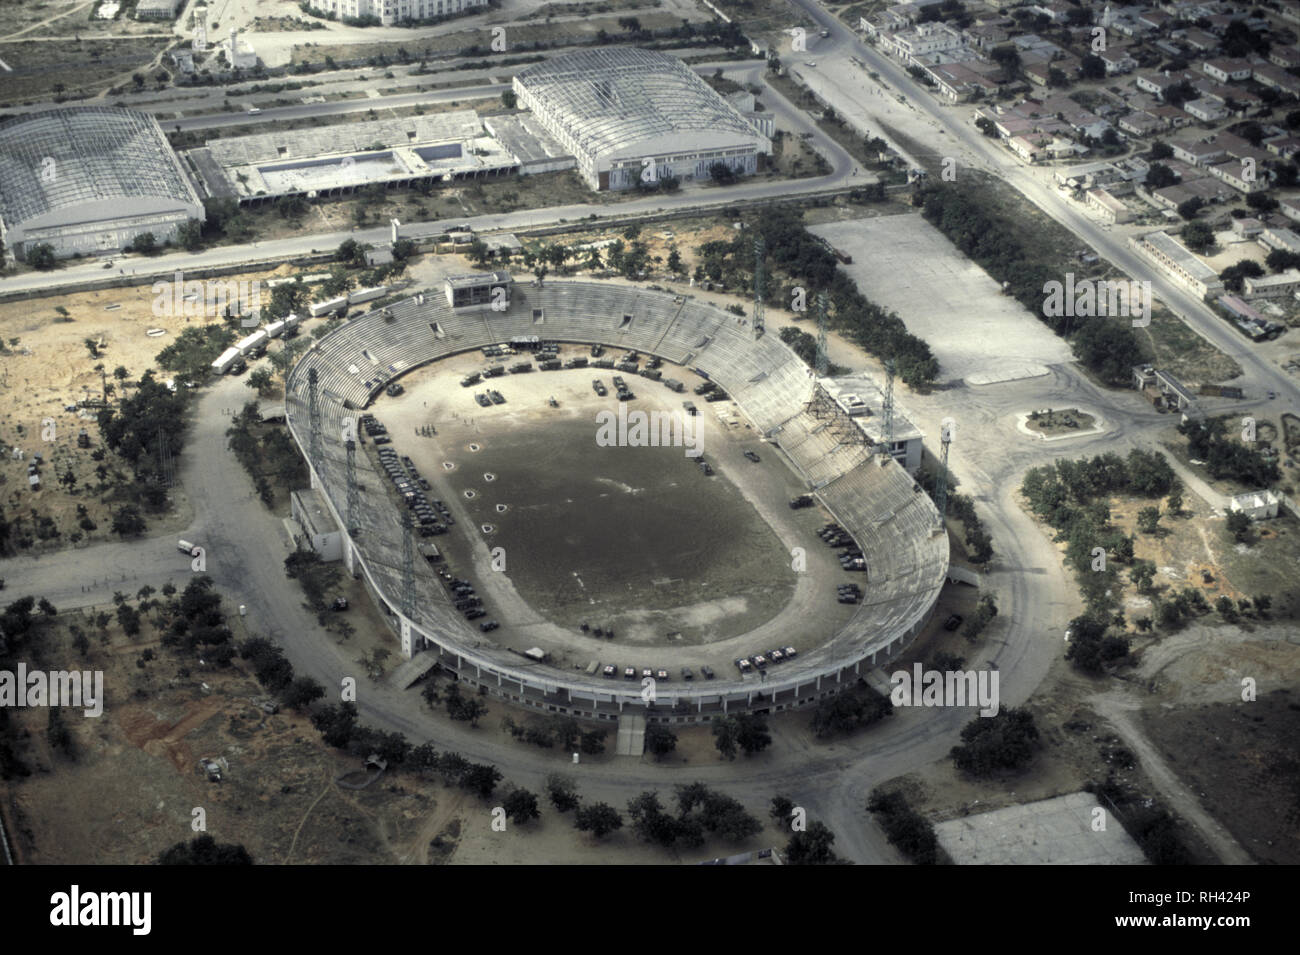 12 octobre 1993 Stade de Mogadishu, Somalie, vue du nord, où les forces des Nations Unies ont été fondées. Banque D'Images